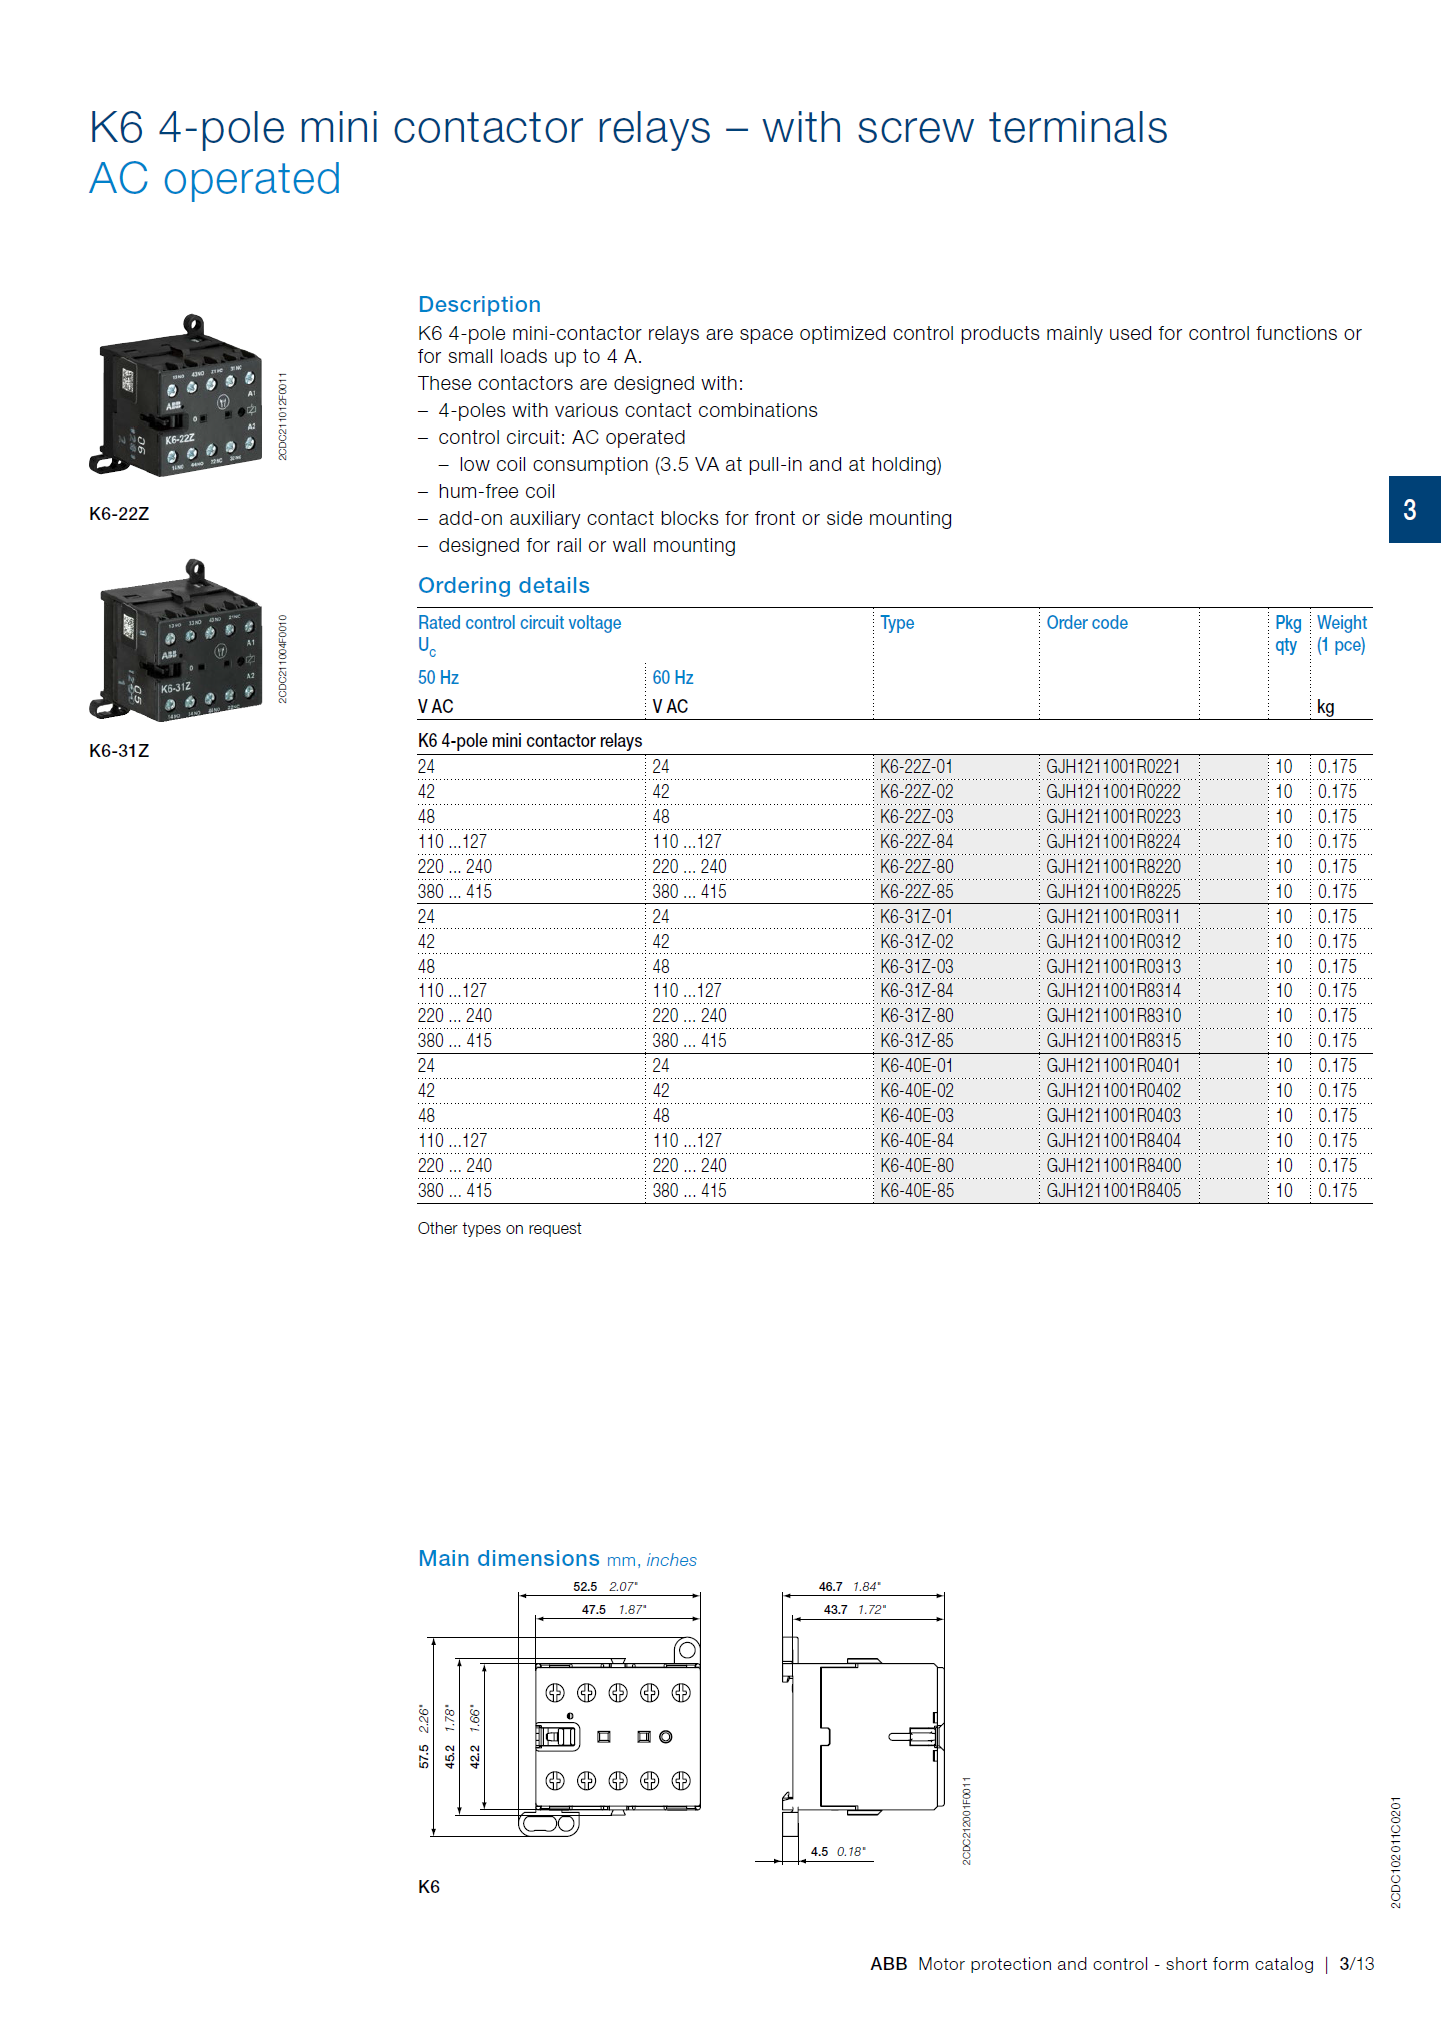 ABB B6, B7 series mini contactors: B7S-30-10-1.7 / GJL1313001R7101